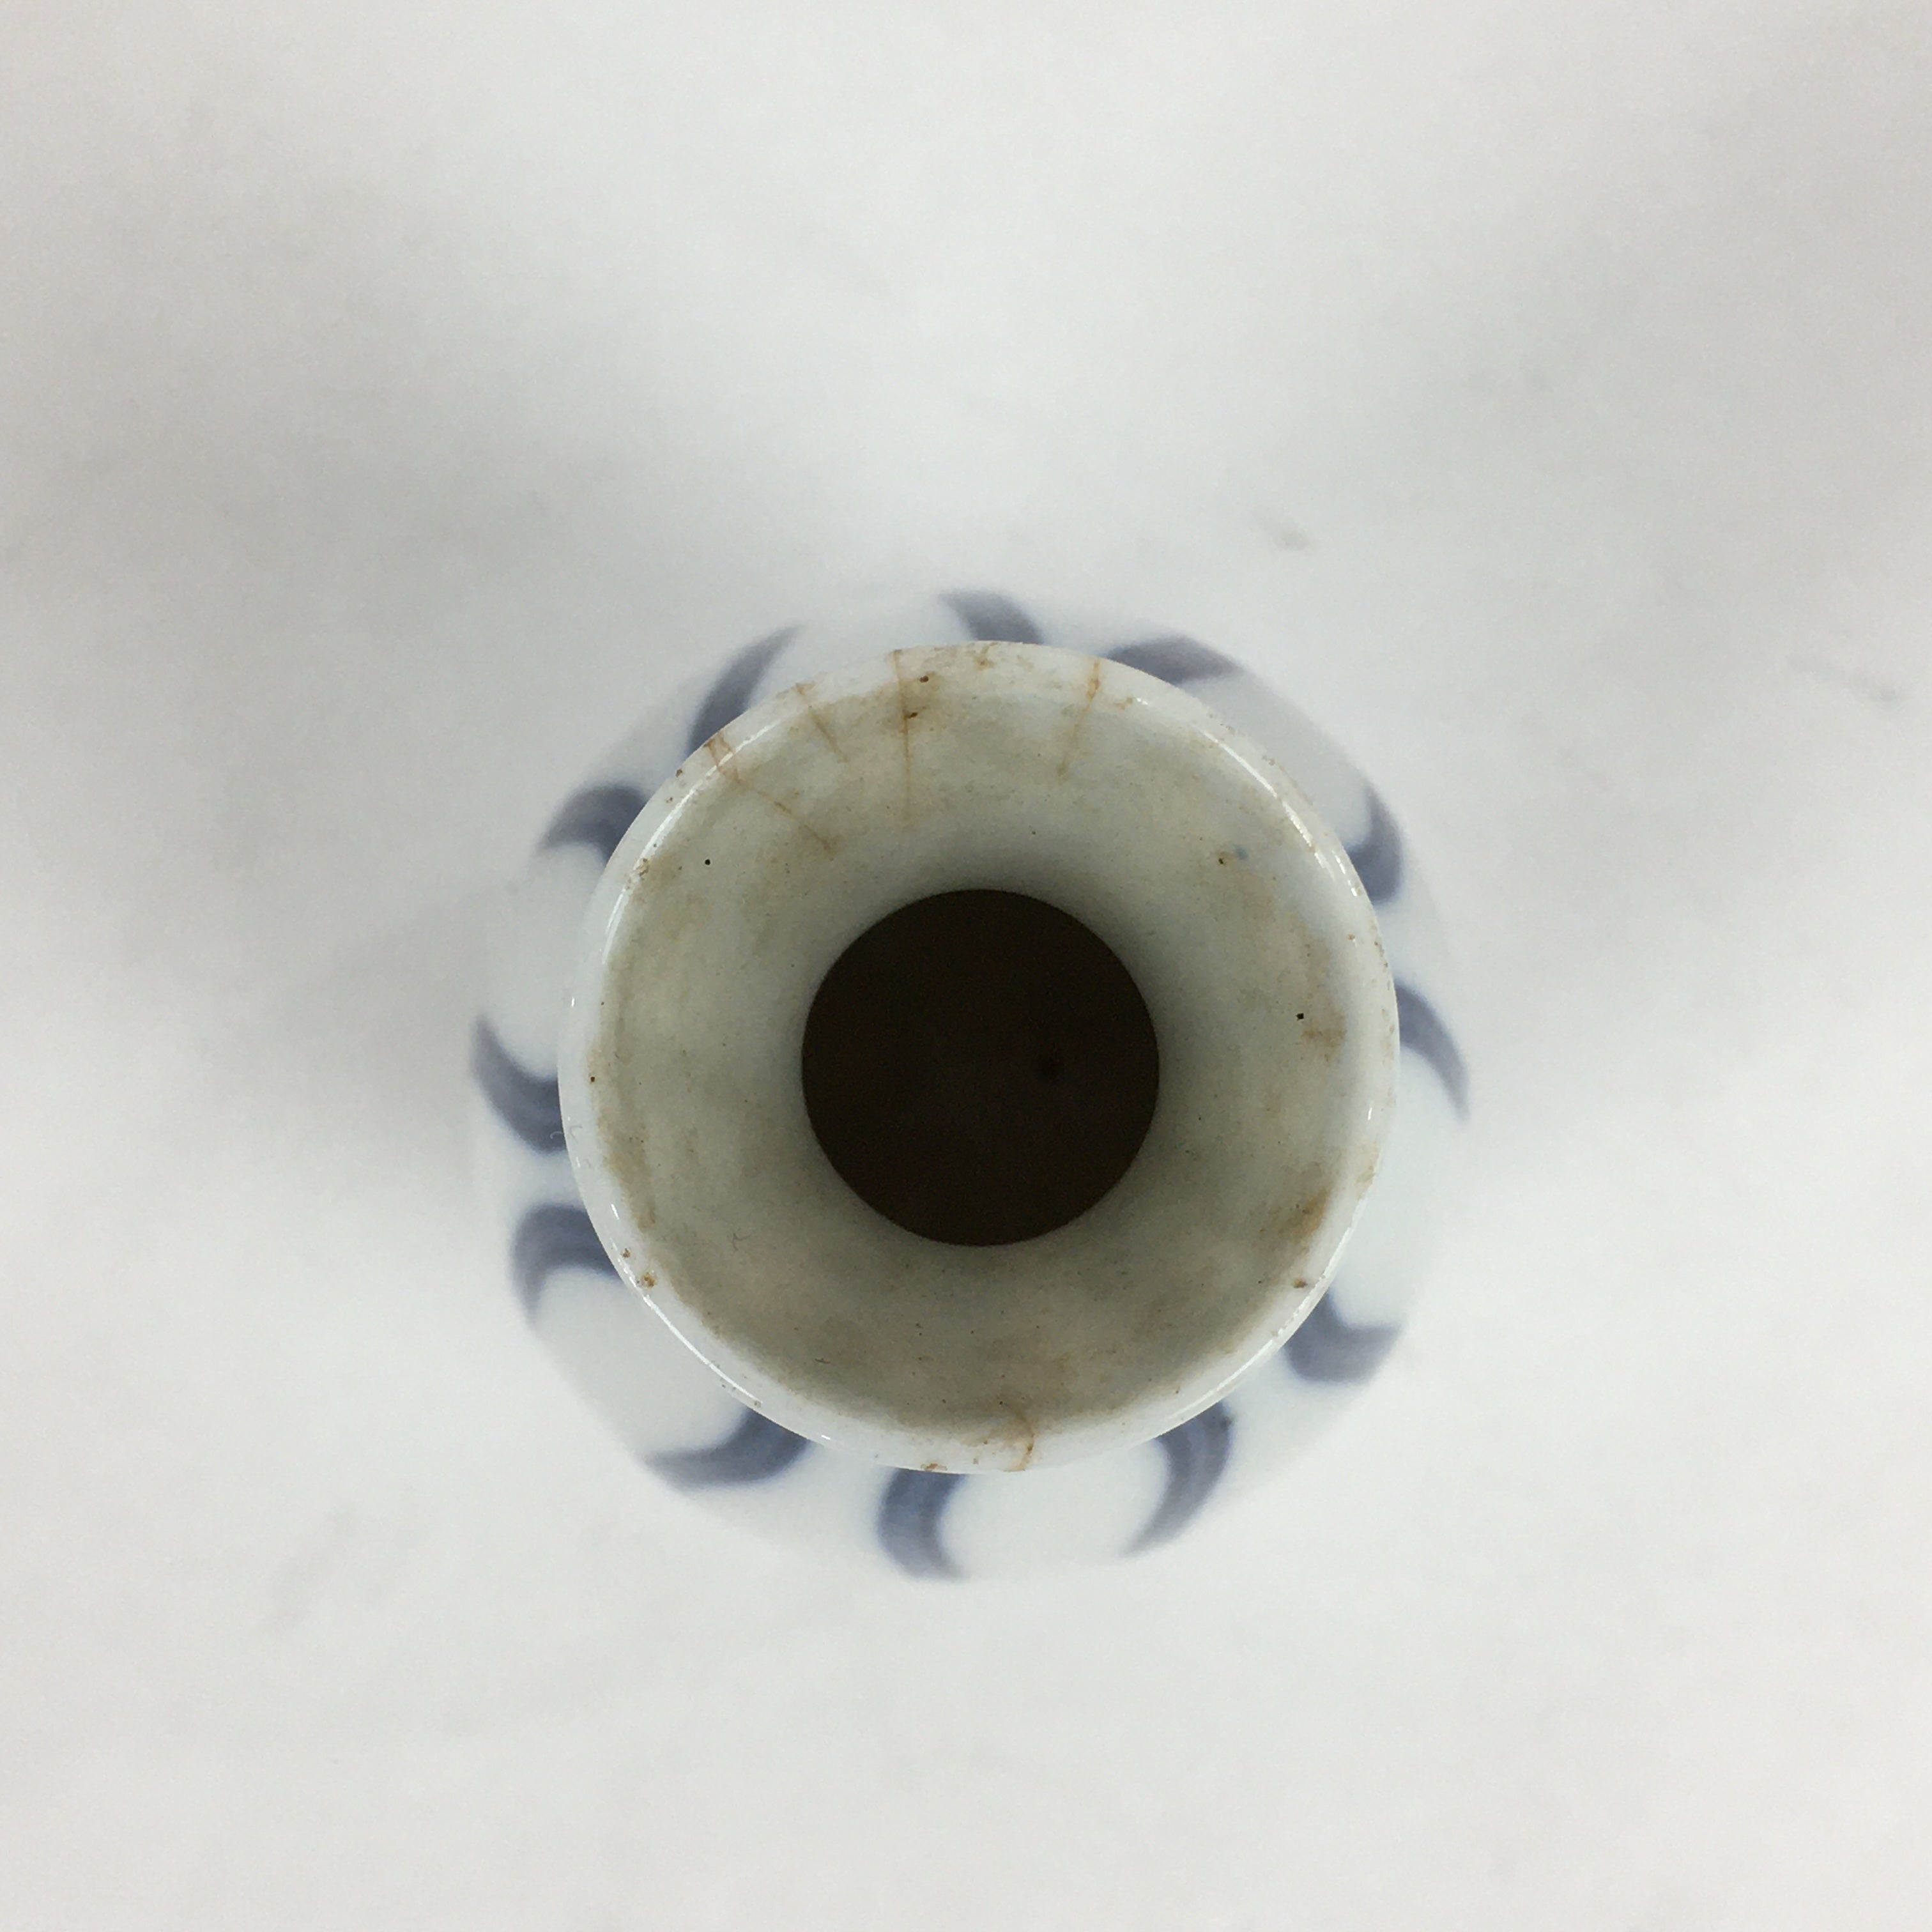 Japanese Porcelain Sake Bottle Vtg Blue Lines Design Tokkuri White TS393